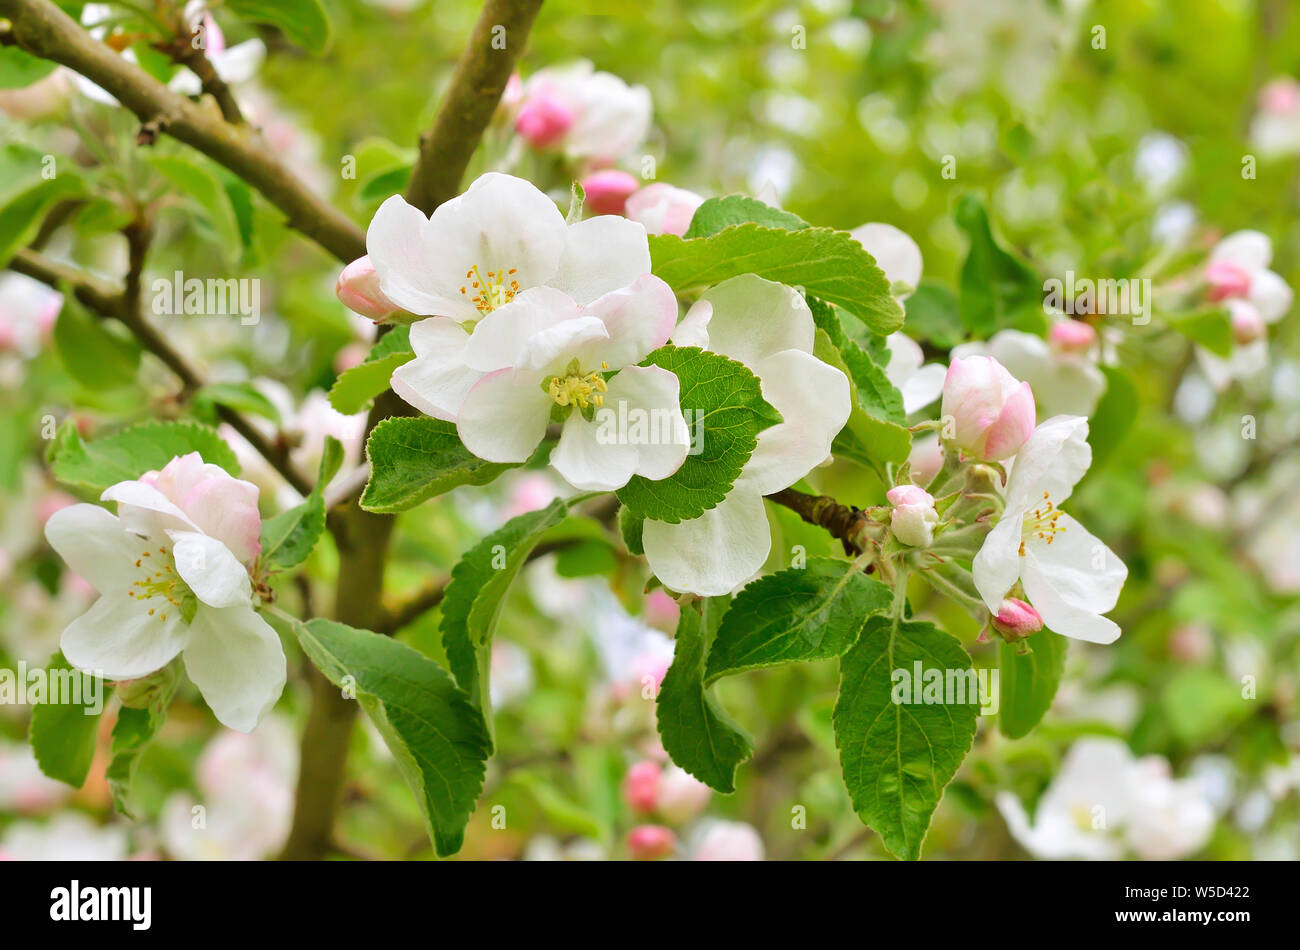 La fioritura dei meli in giardino, la messa a fuoco sul fiore nella parte anteriore Foto Stock